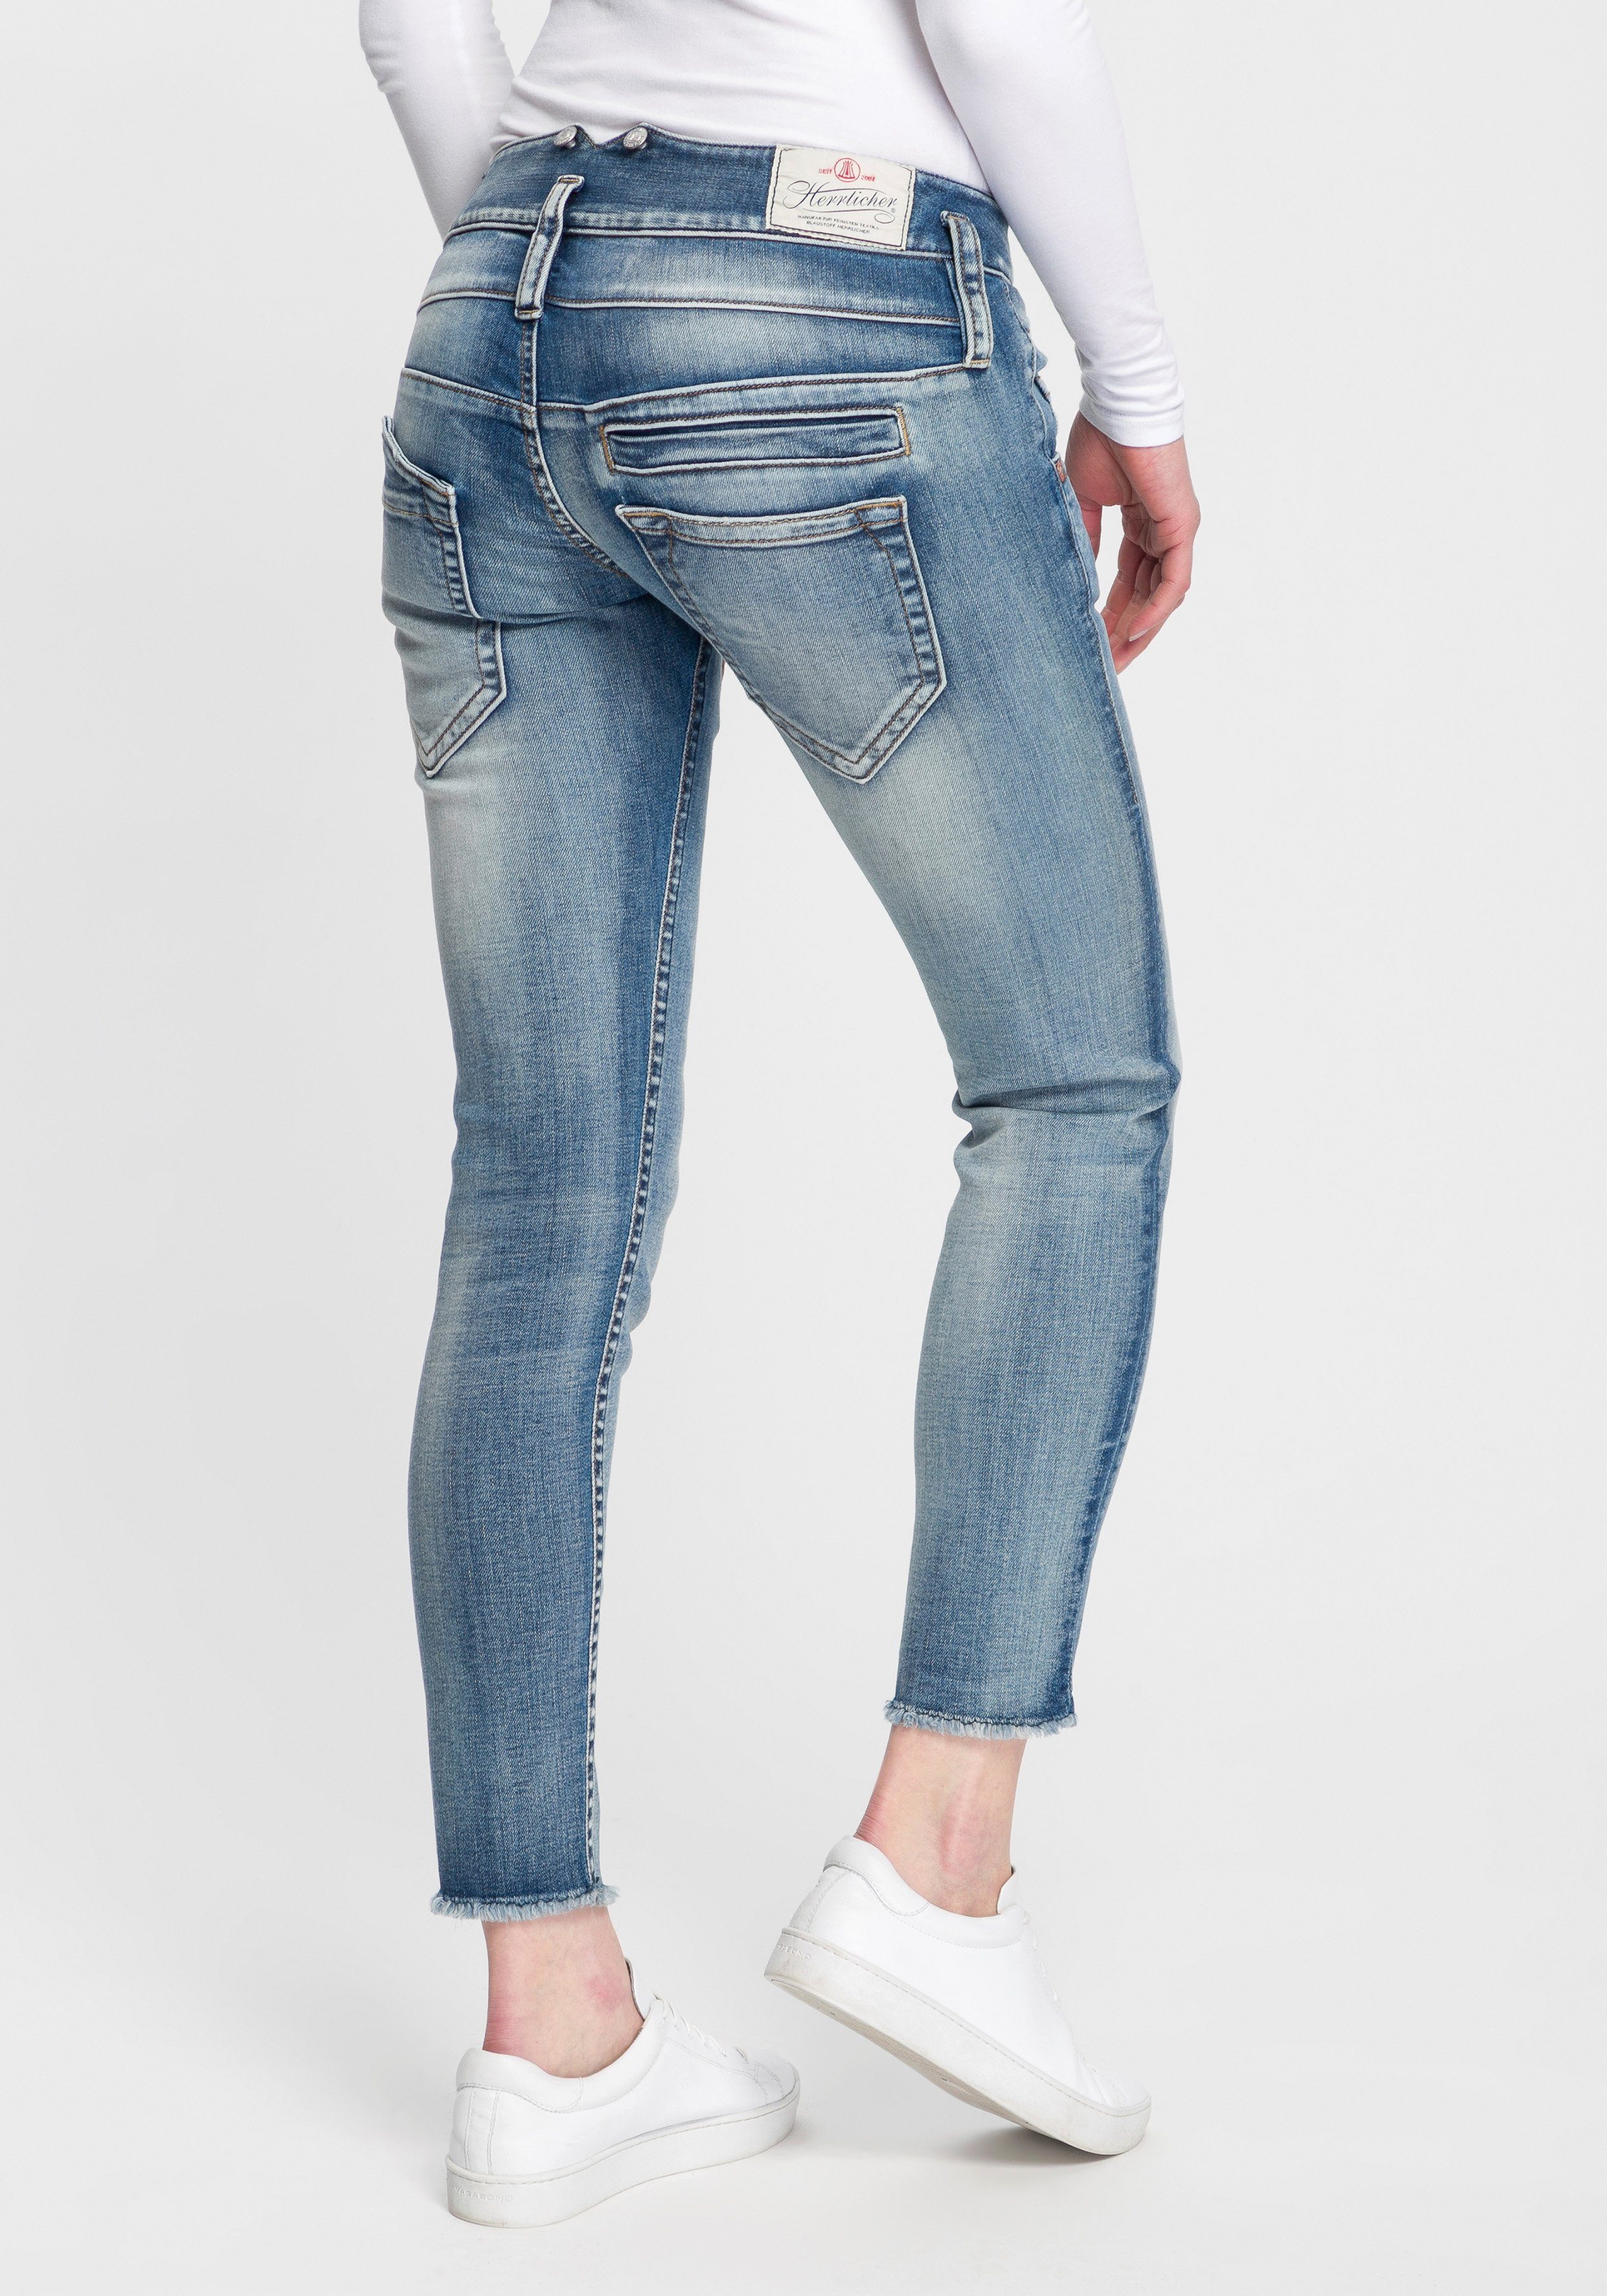 تطوع أو لاحقا يؤكد استنادا مائع استدعى herrlicher jeans cropped -  lapopotteapitchotte.com